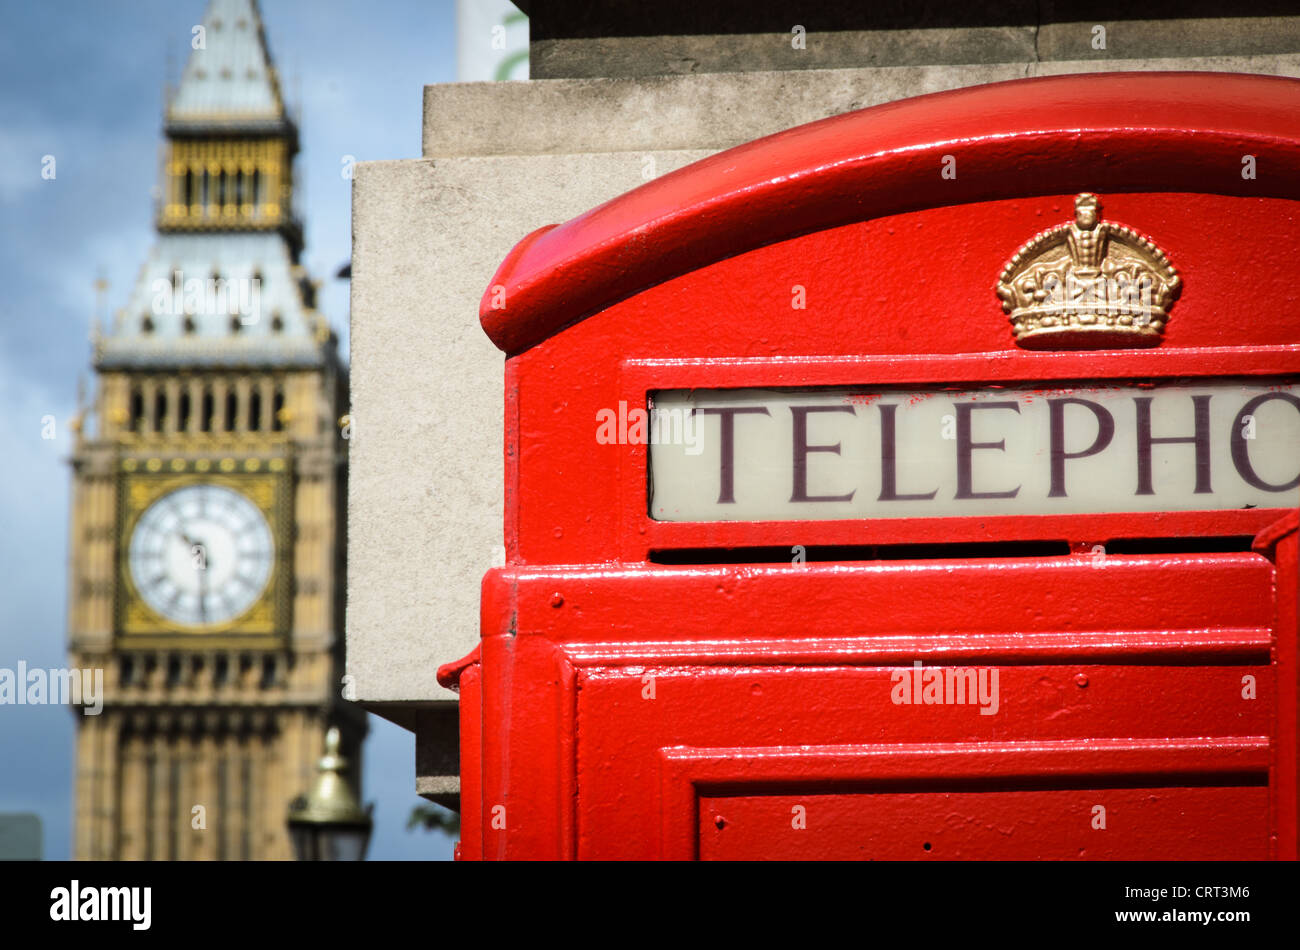 LONDRES, Royaume-Uni — la tour Elizabeth, qui abrite l'emblématique cloche Big Ben, domine l'extrémité nord du palais de Westminster. La tour historique de l'horloge est devenue un symbole de Londres et du Royaume-Uni. Banque D'Images